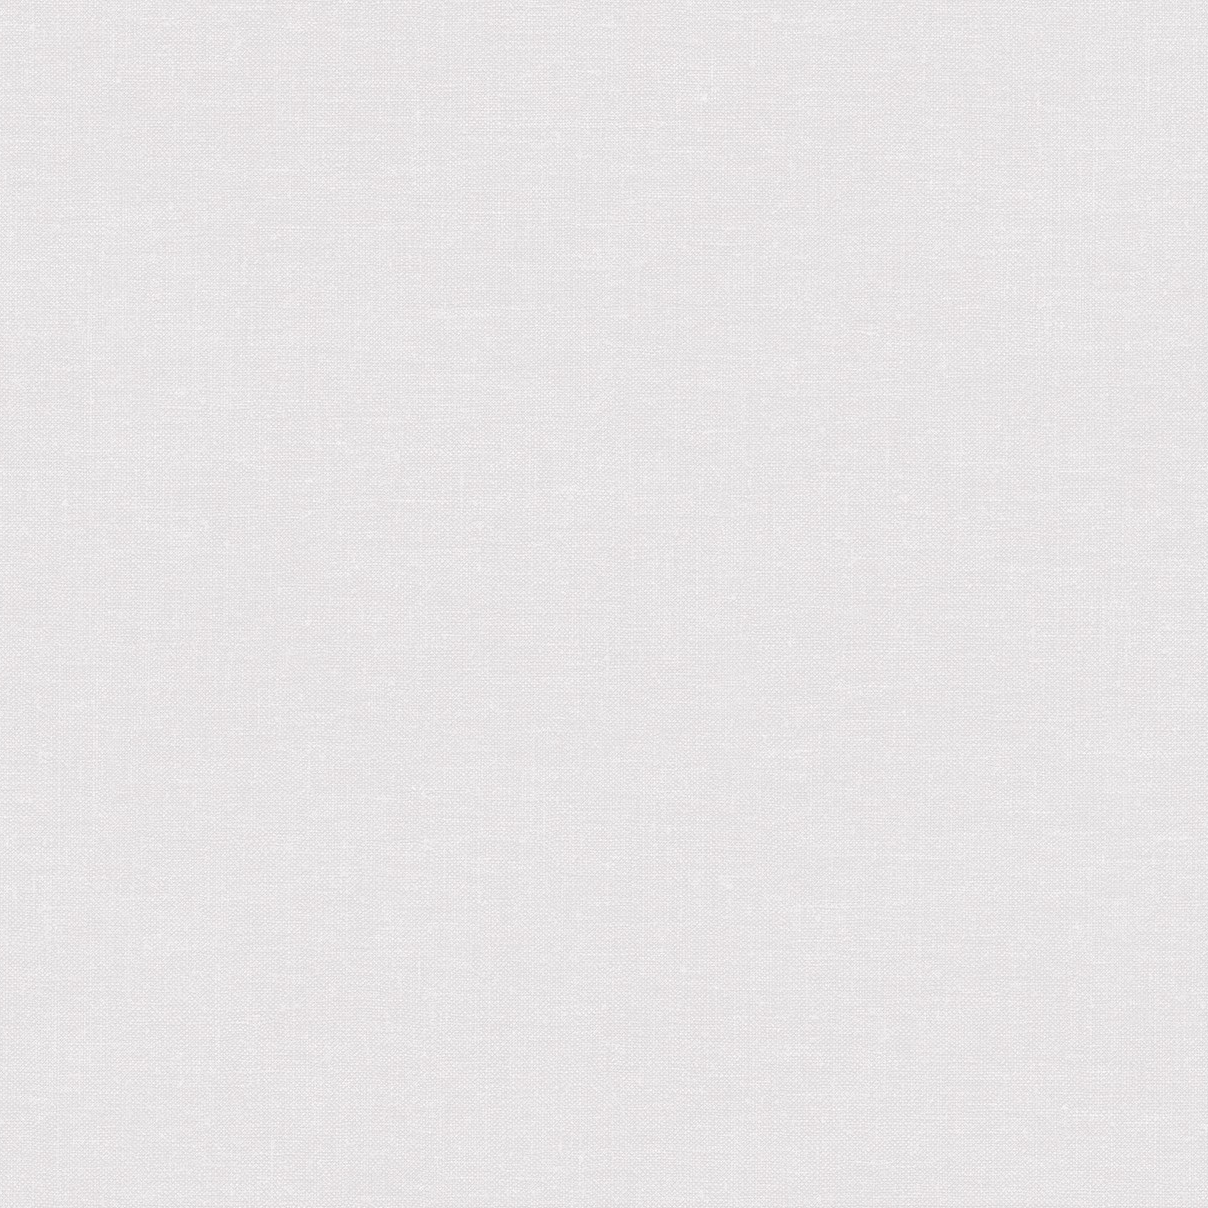 Обои 285145 Textura Ateliero - российские, флизелиновые, белого тона, тканевая фактура, длина 10.00м, ширина 1.06м, рекомендуем в коридор.